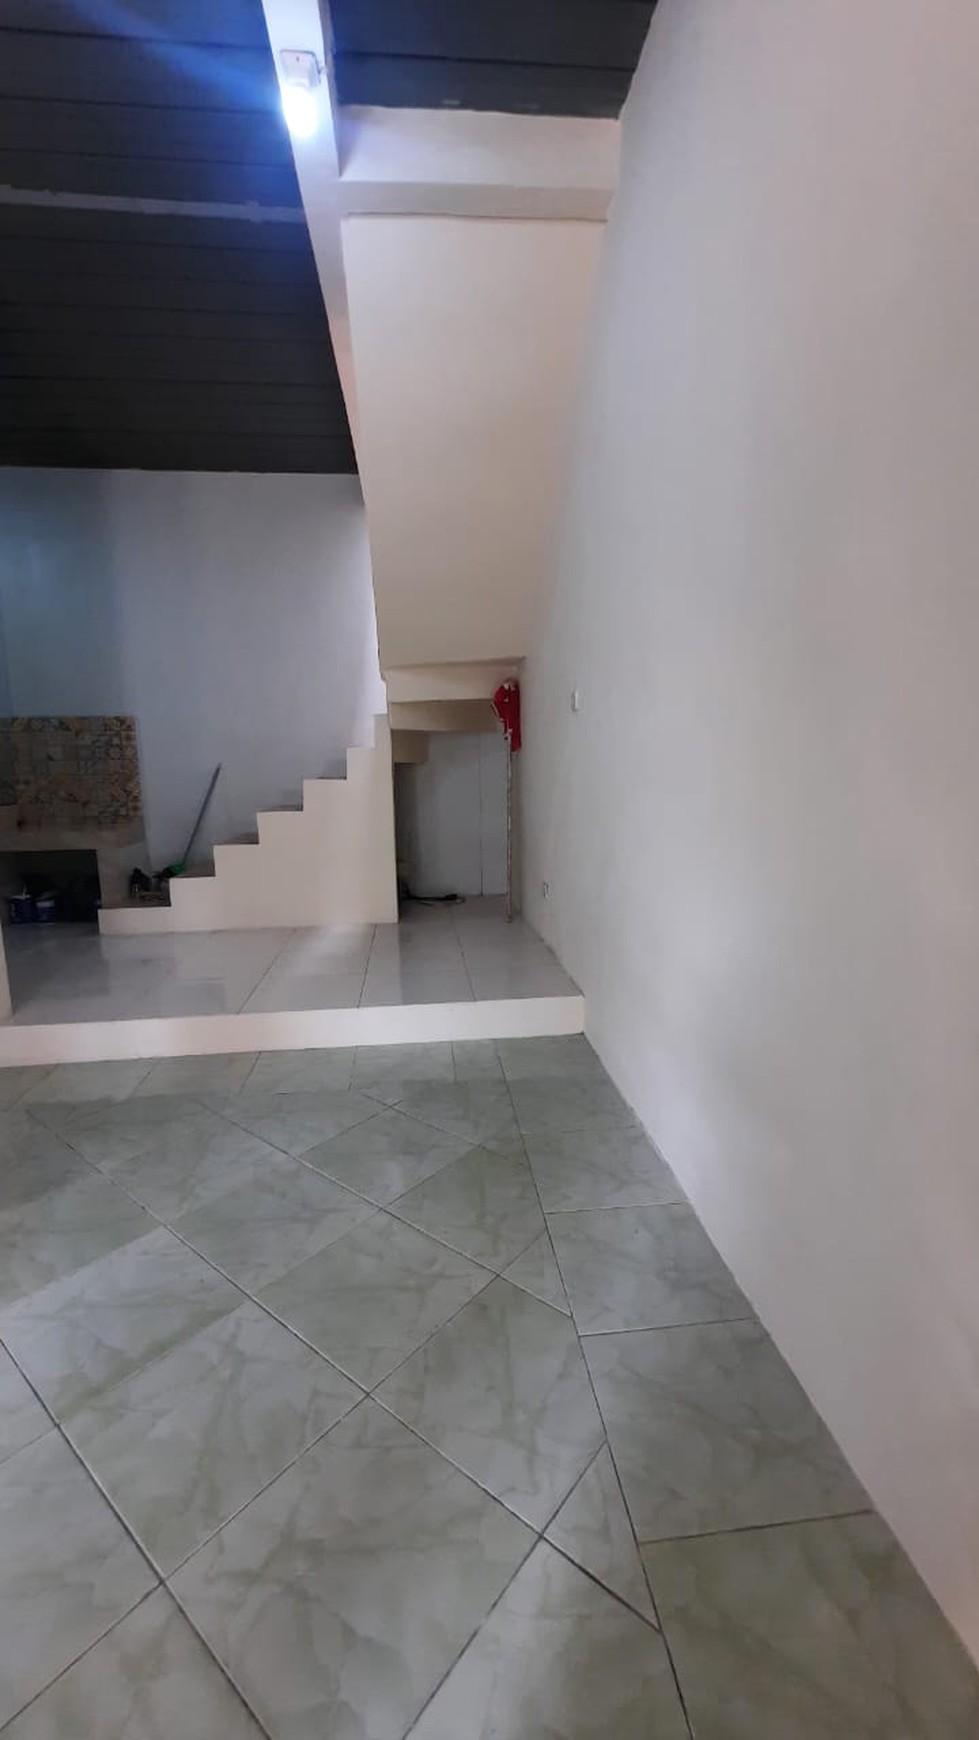 Rumah minimalis, 2 lantai, lokasi strategis di Bintaro